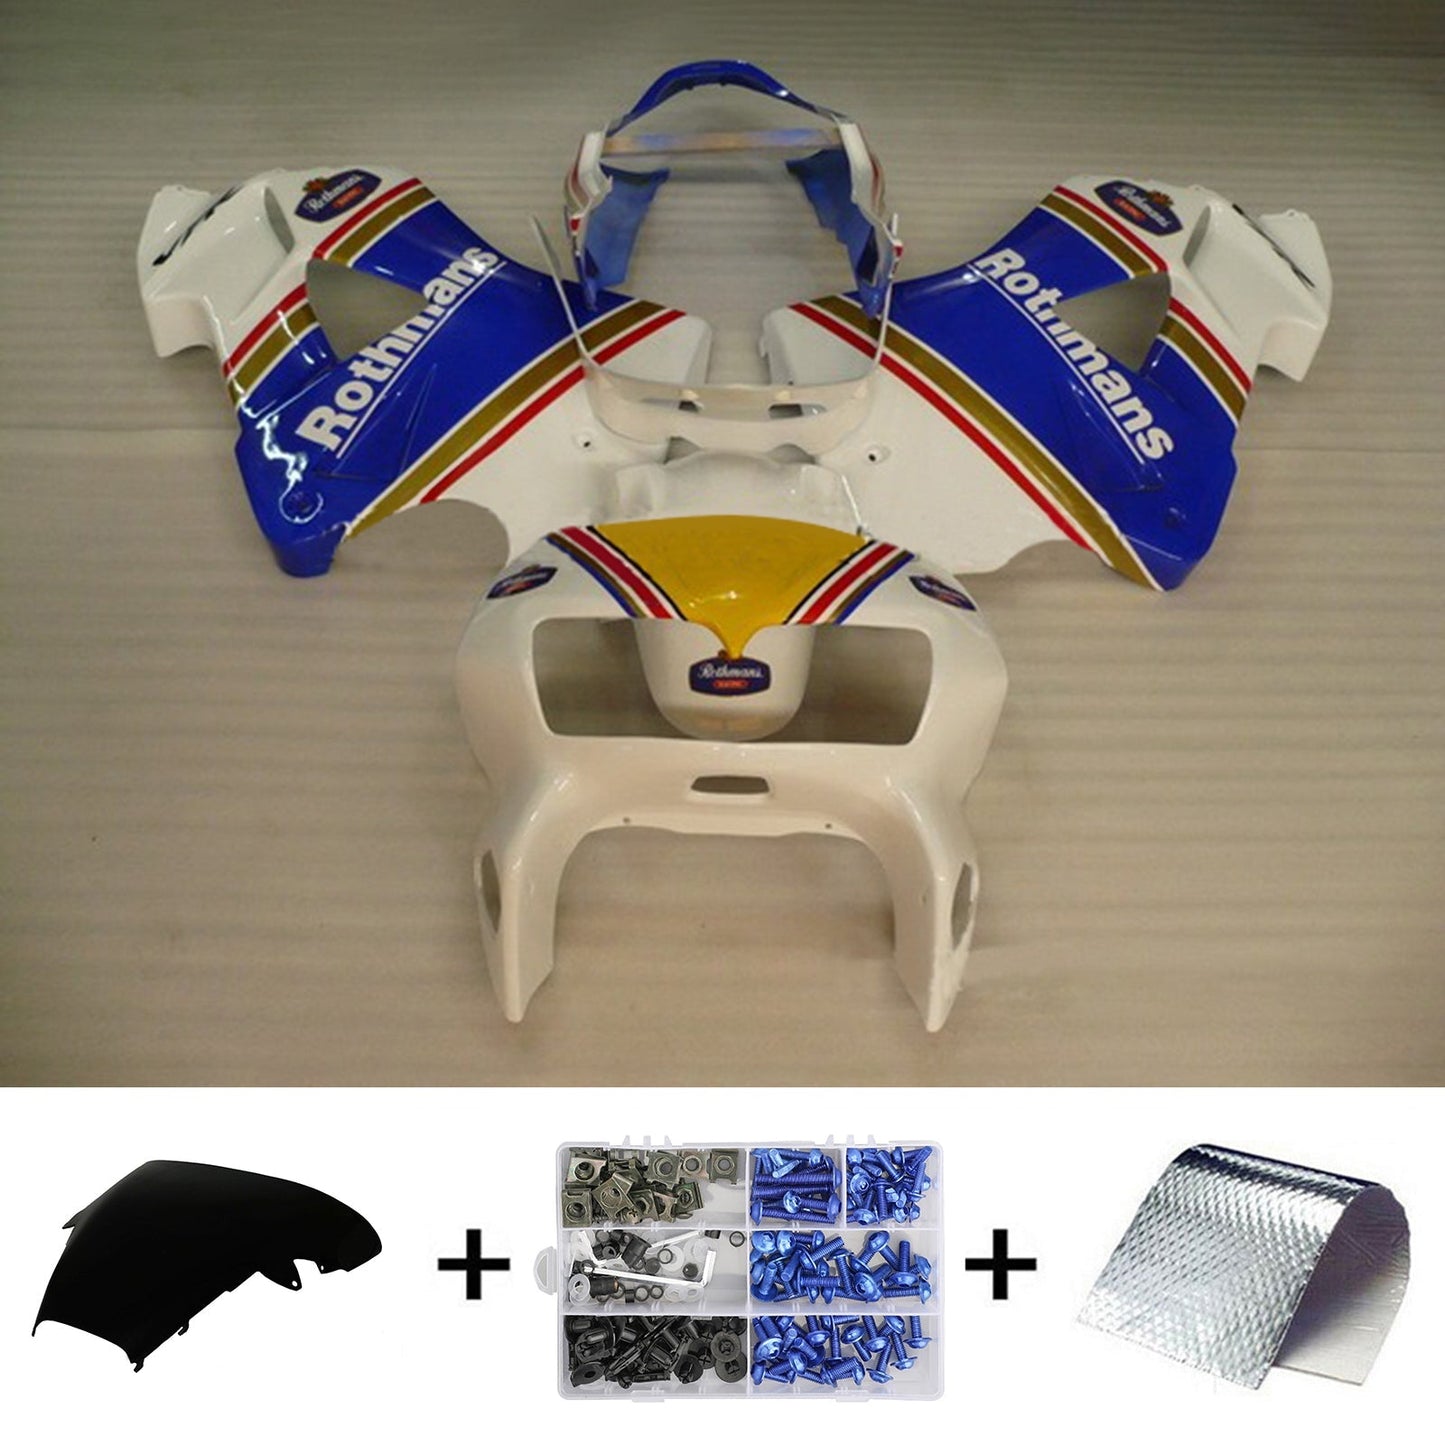 1998-2001 Honda VFR800 Amotopart Injection Fairing Kit Bodywork Plastic ABS #104